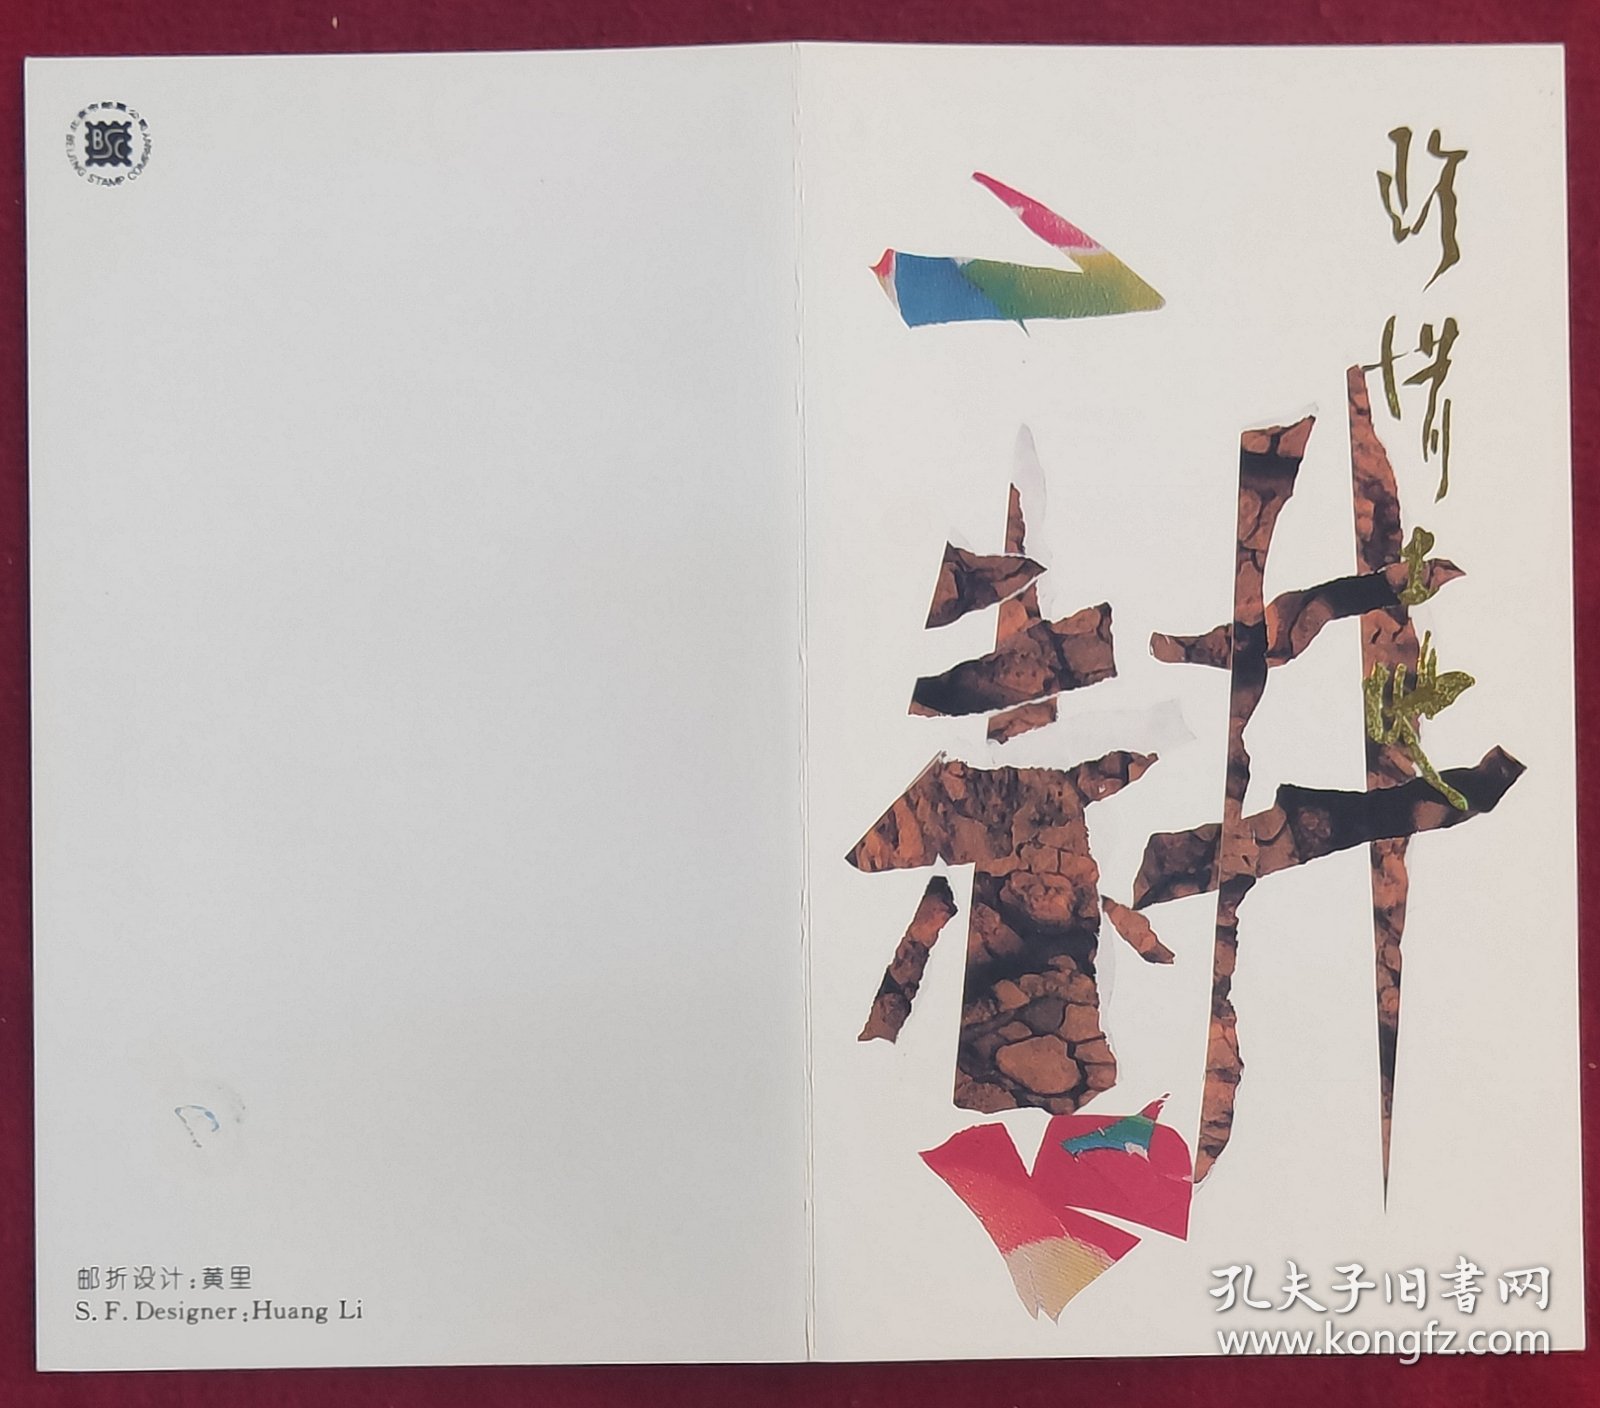 1996－14珍惜土地邮票邮折（北京市邮票公司）